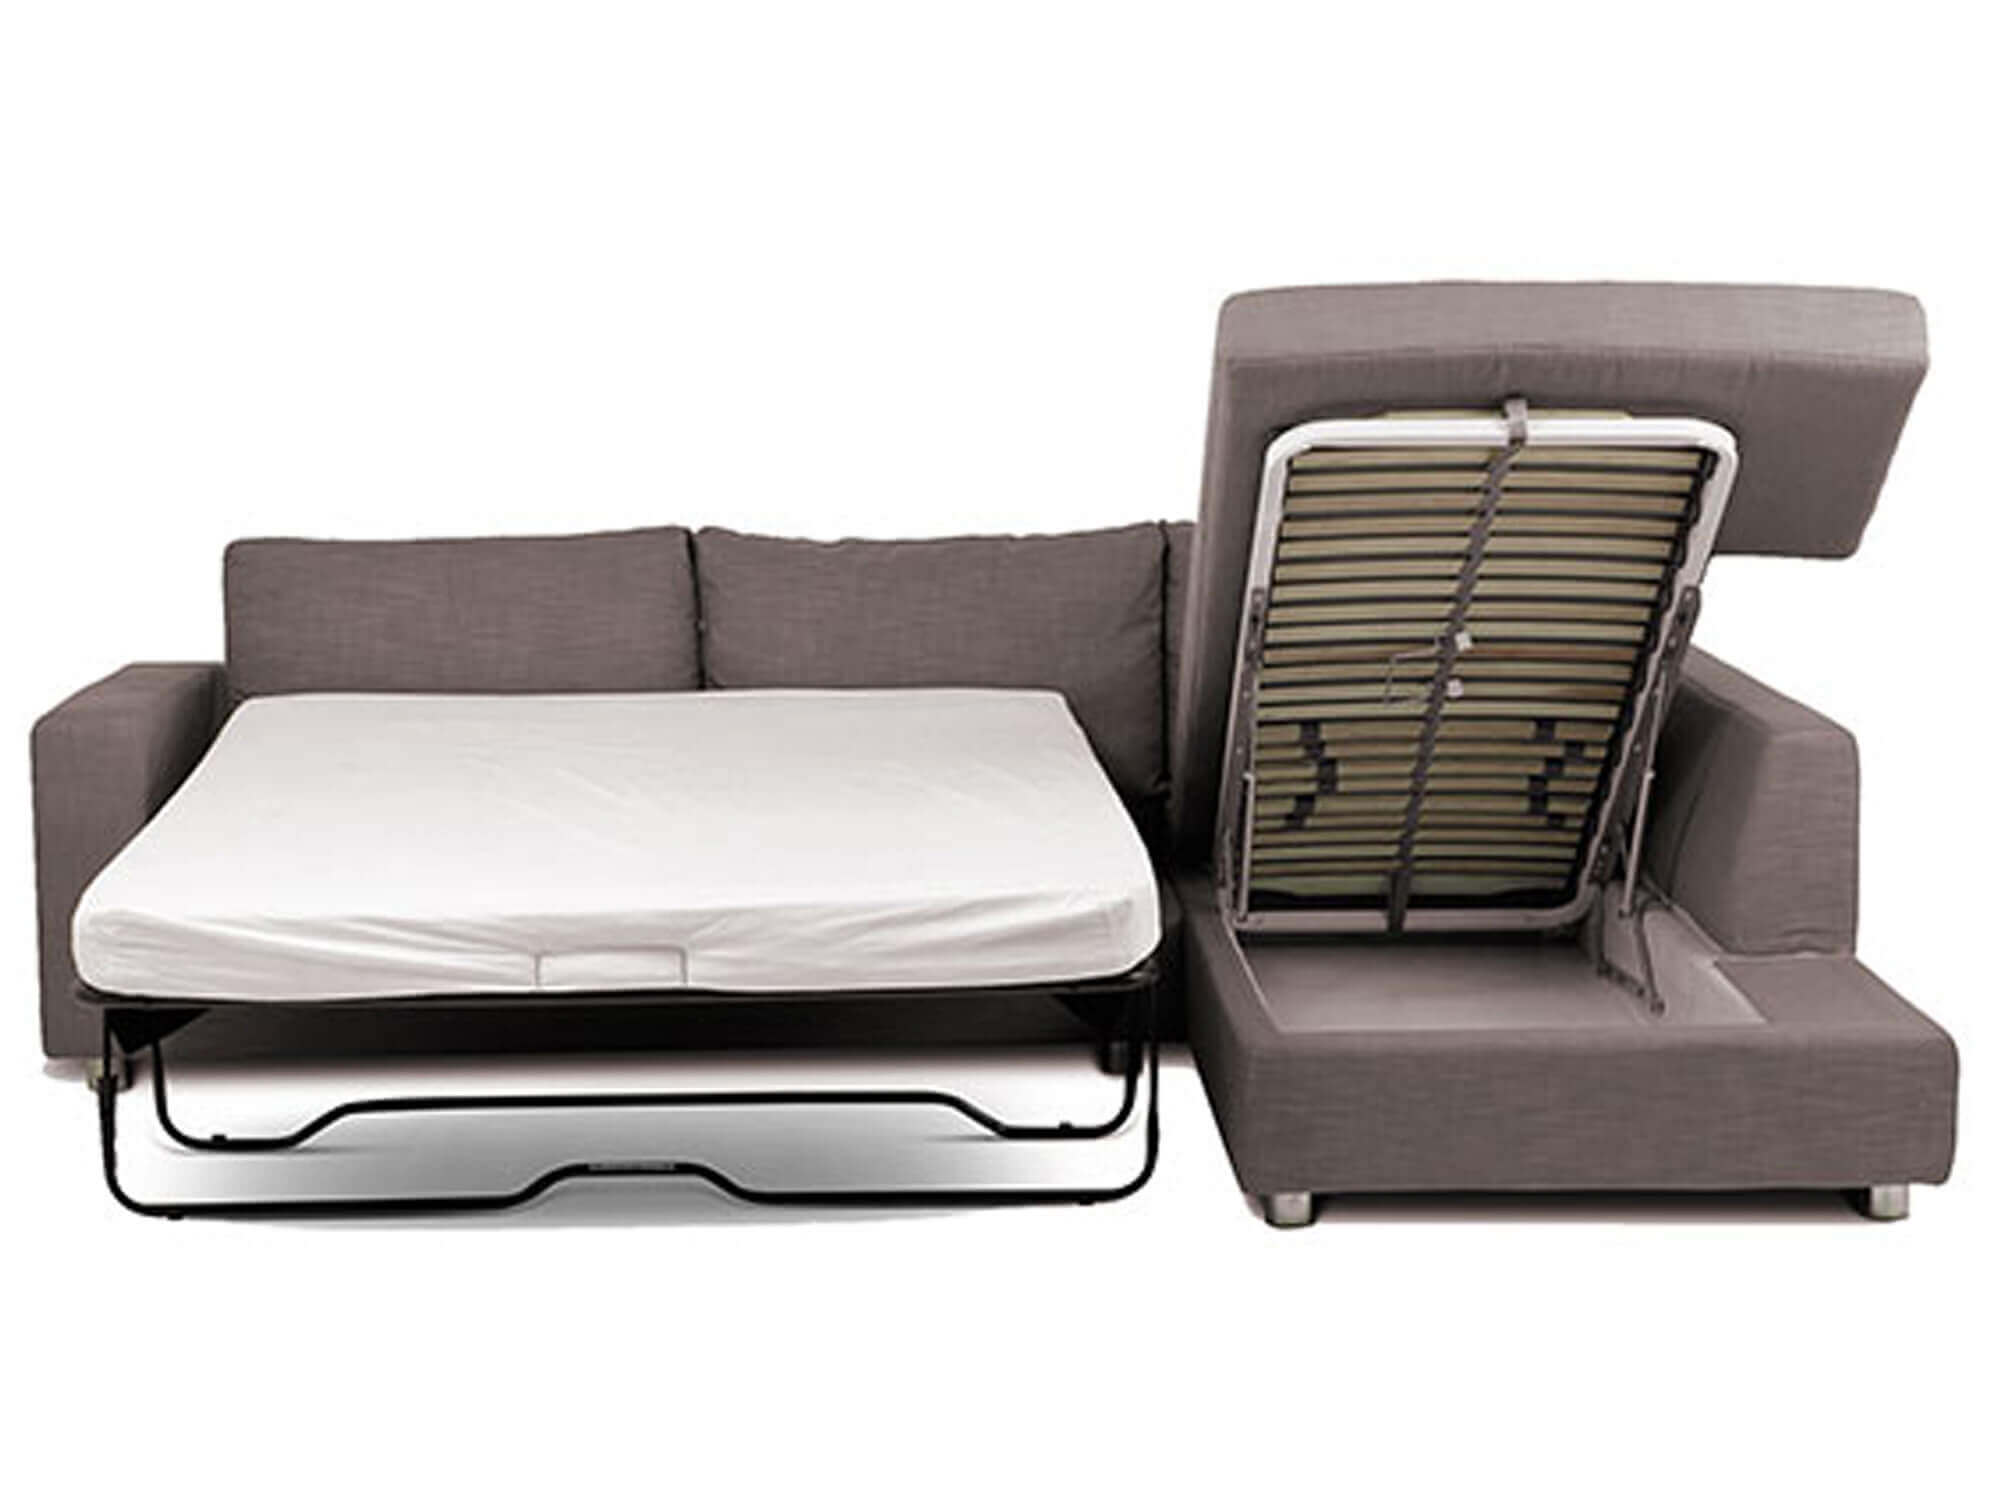 Угловой диван со спальным местом, компактный размер